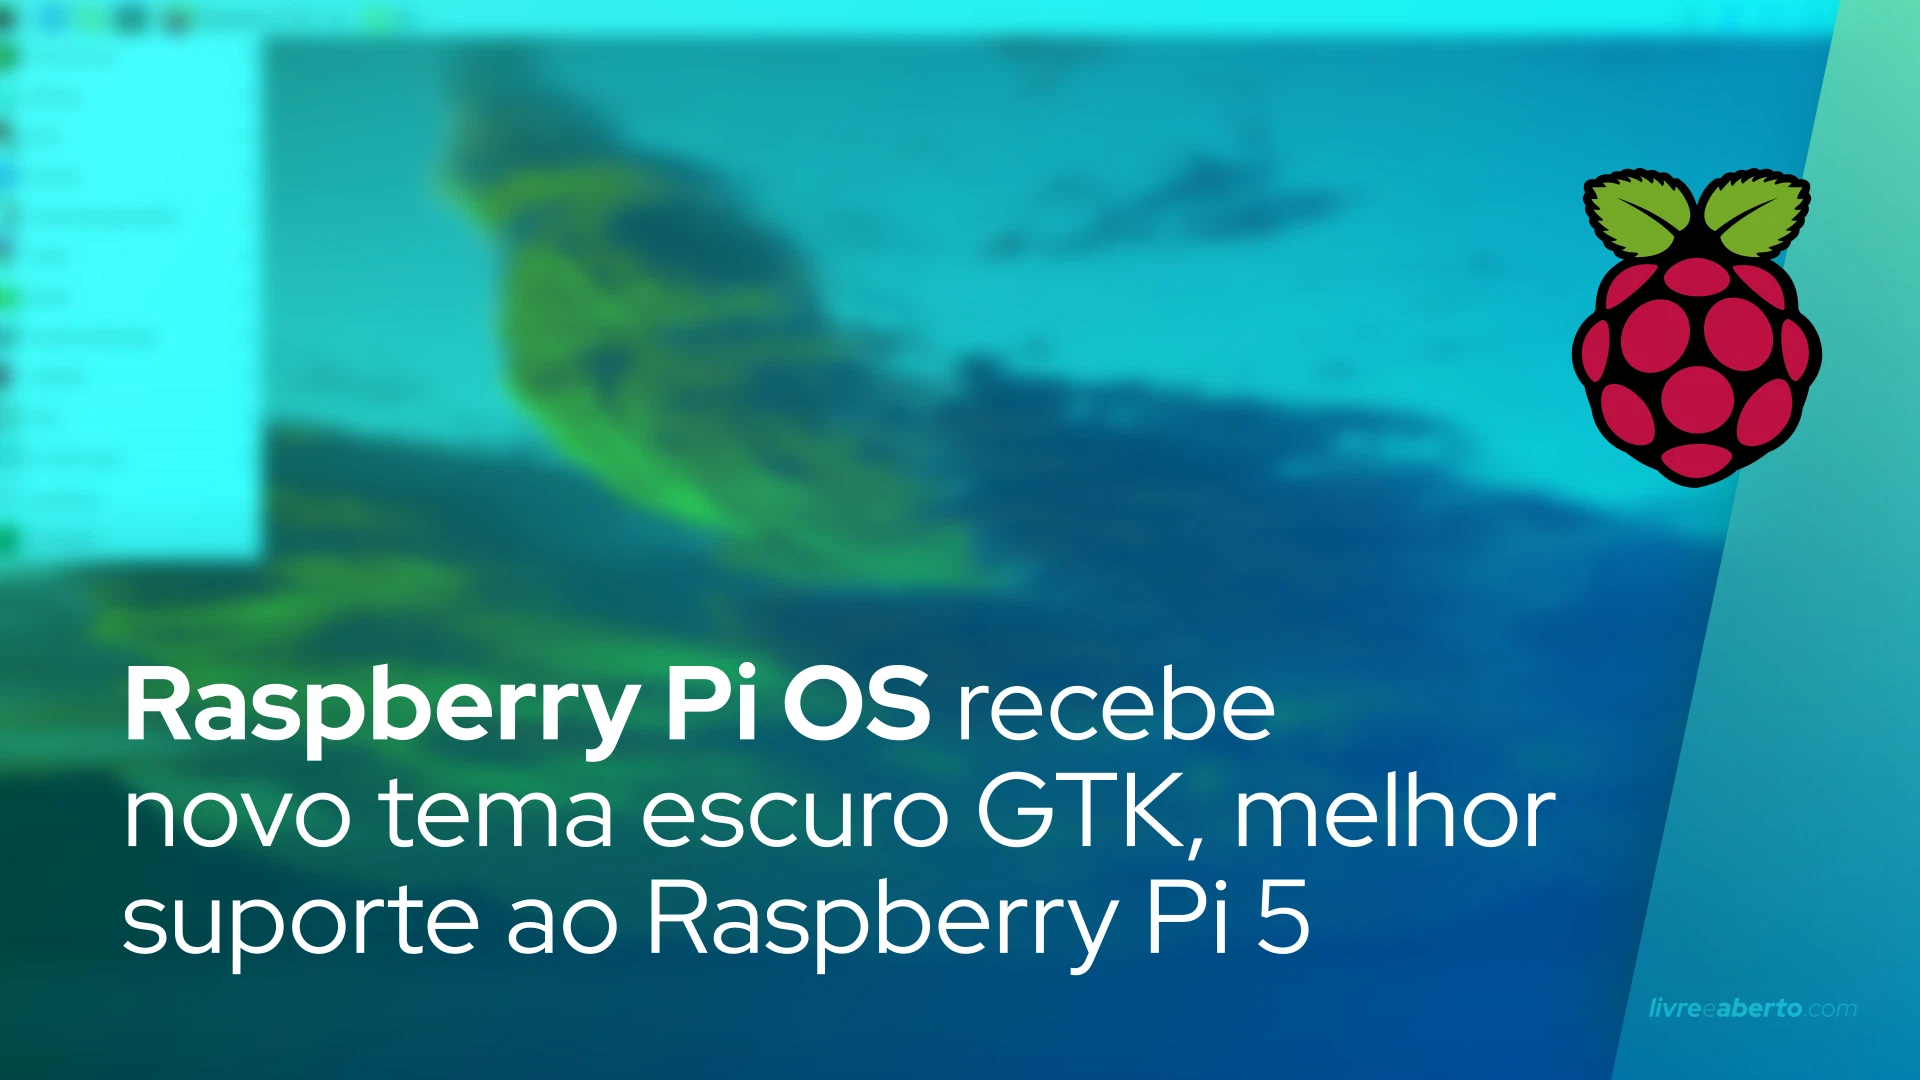 Raspberry Pi OS recebe novo tema escuro GTK, melhor suporte ao Raspberry Pi 5